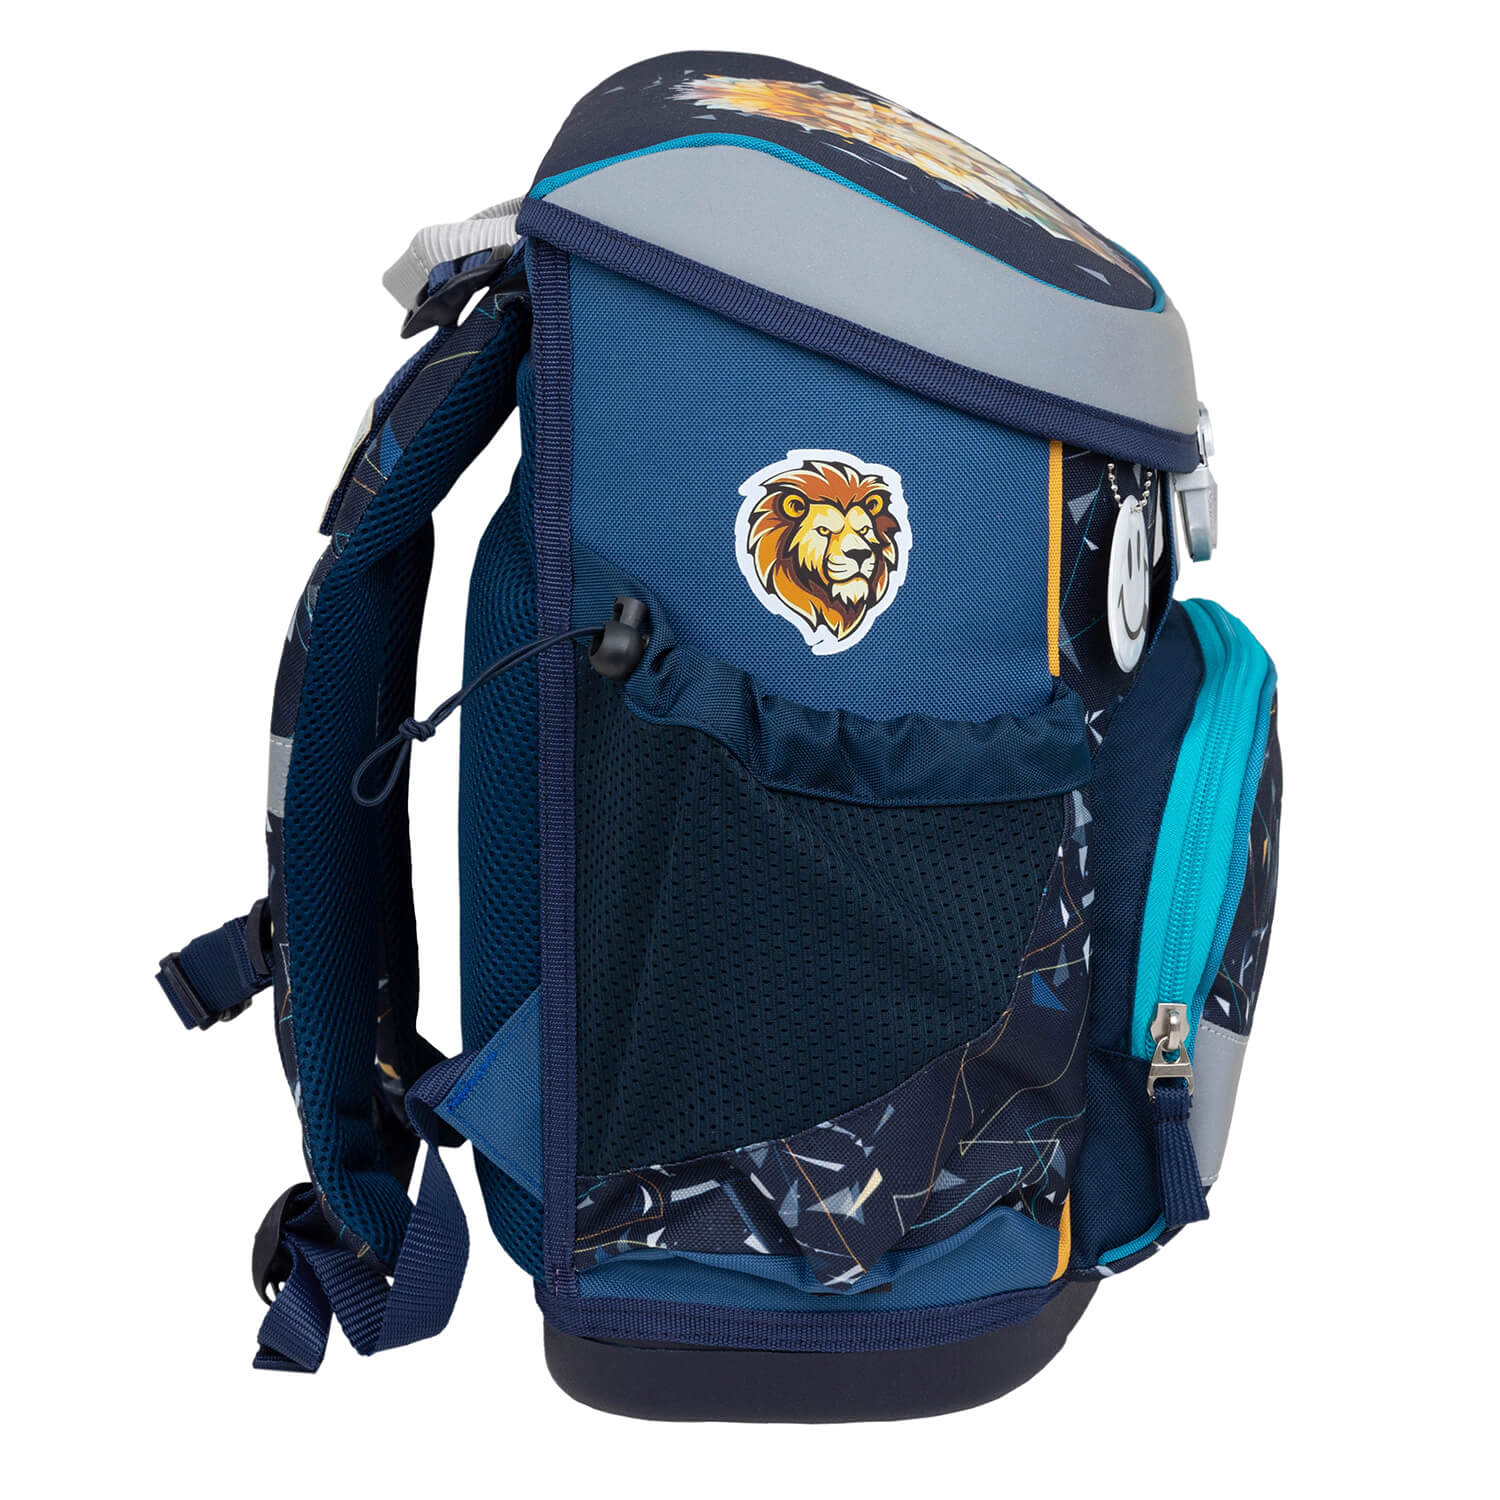 Mini-Fit Lion schoolbag set 4 pcs